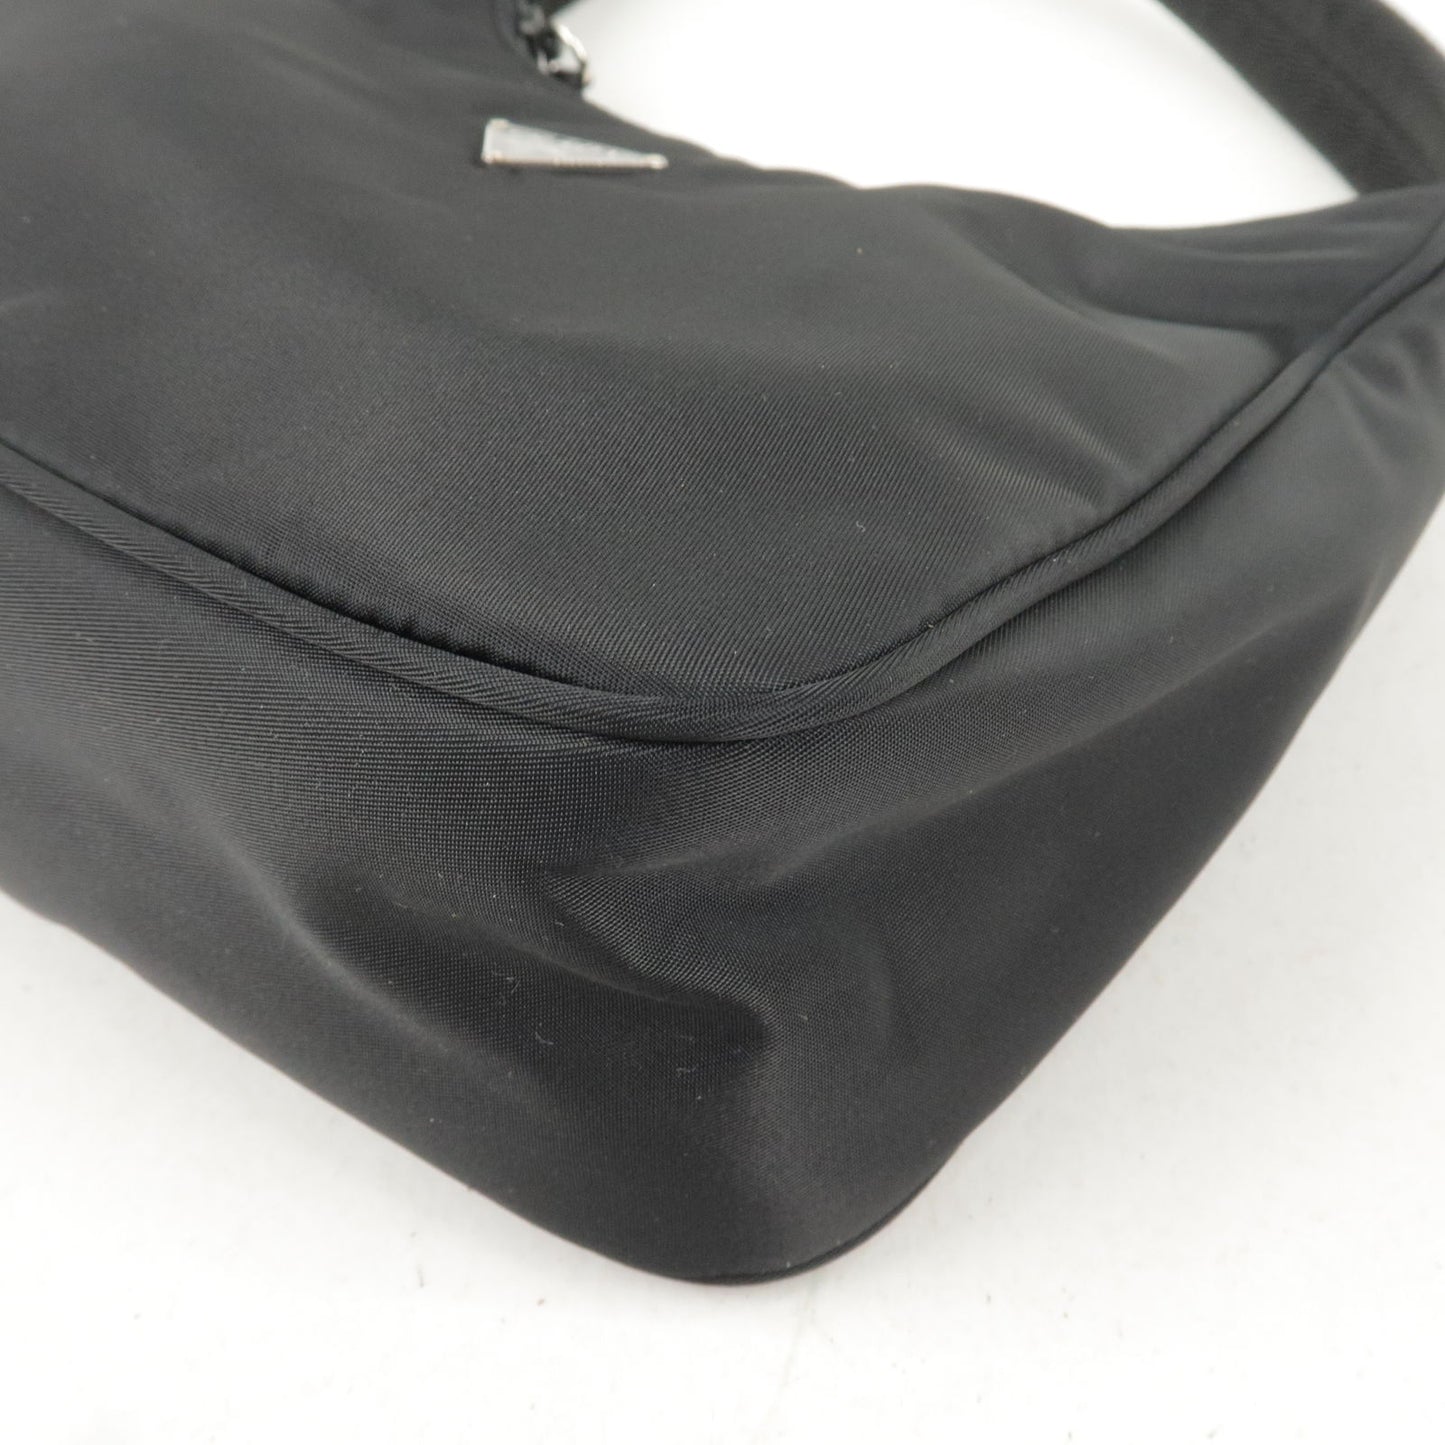 PRADA Logo Nylon Hand Bag Mini Bag NERO Black MV519